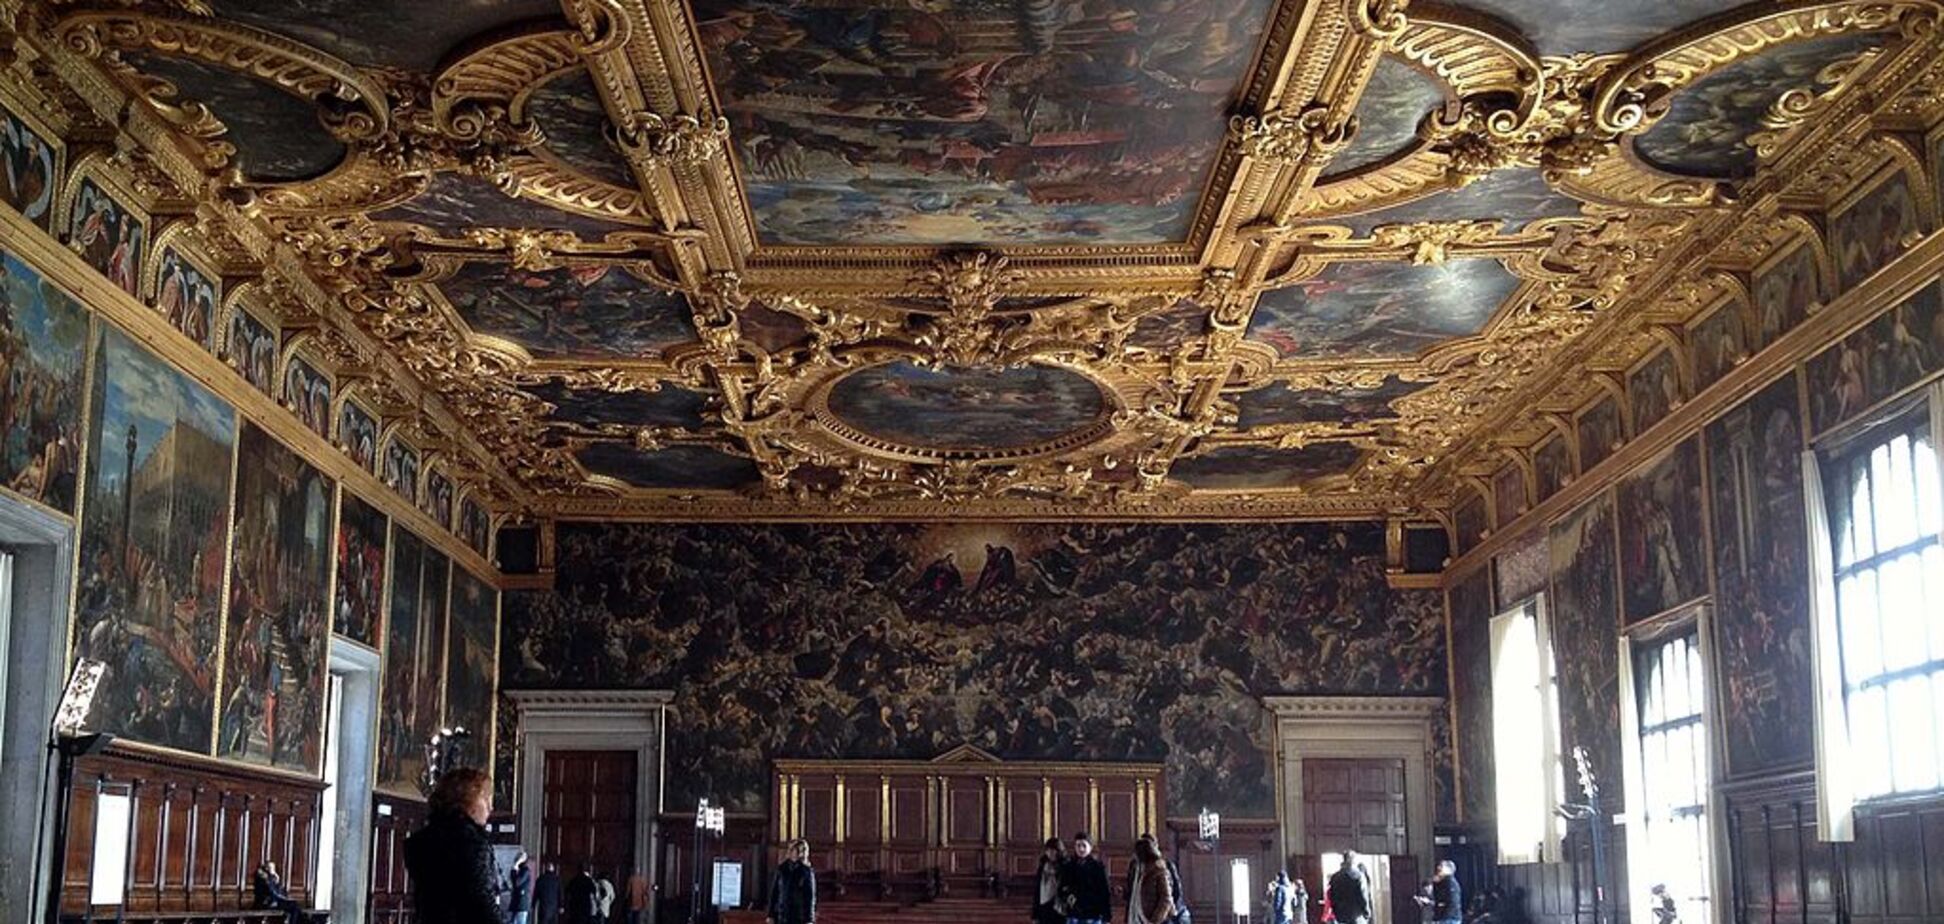 Могут стоить миллионы: в Италии из древнего дворца украли уникальные драгоценности